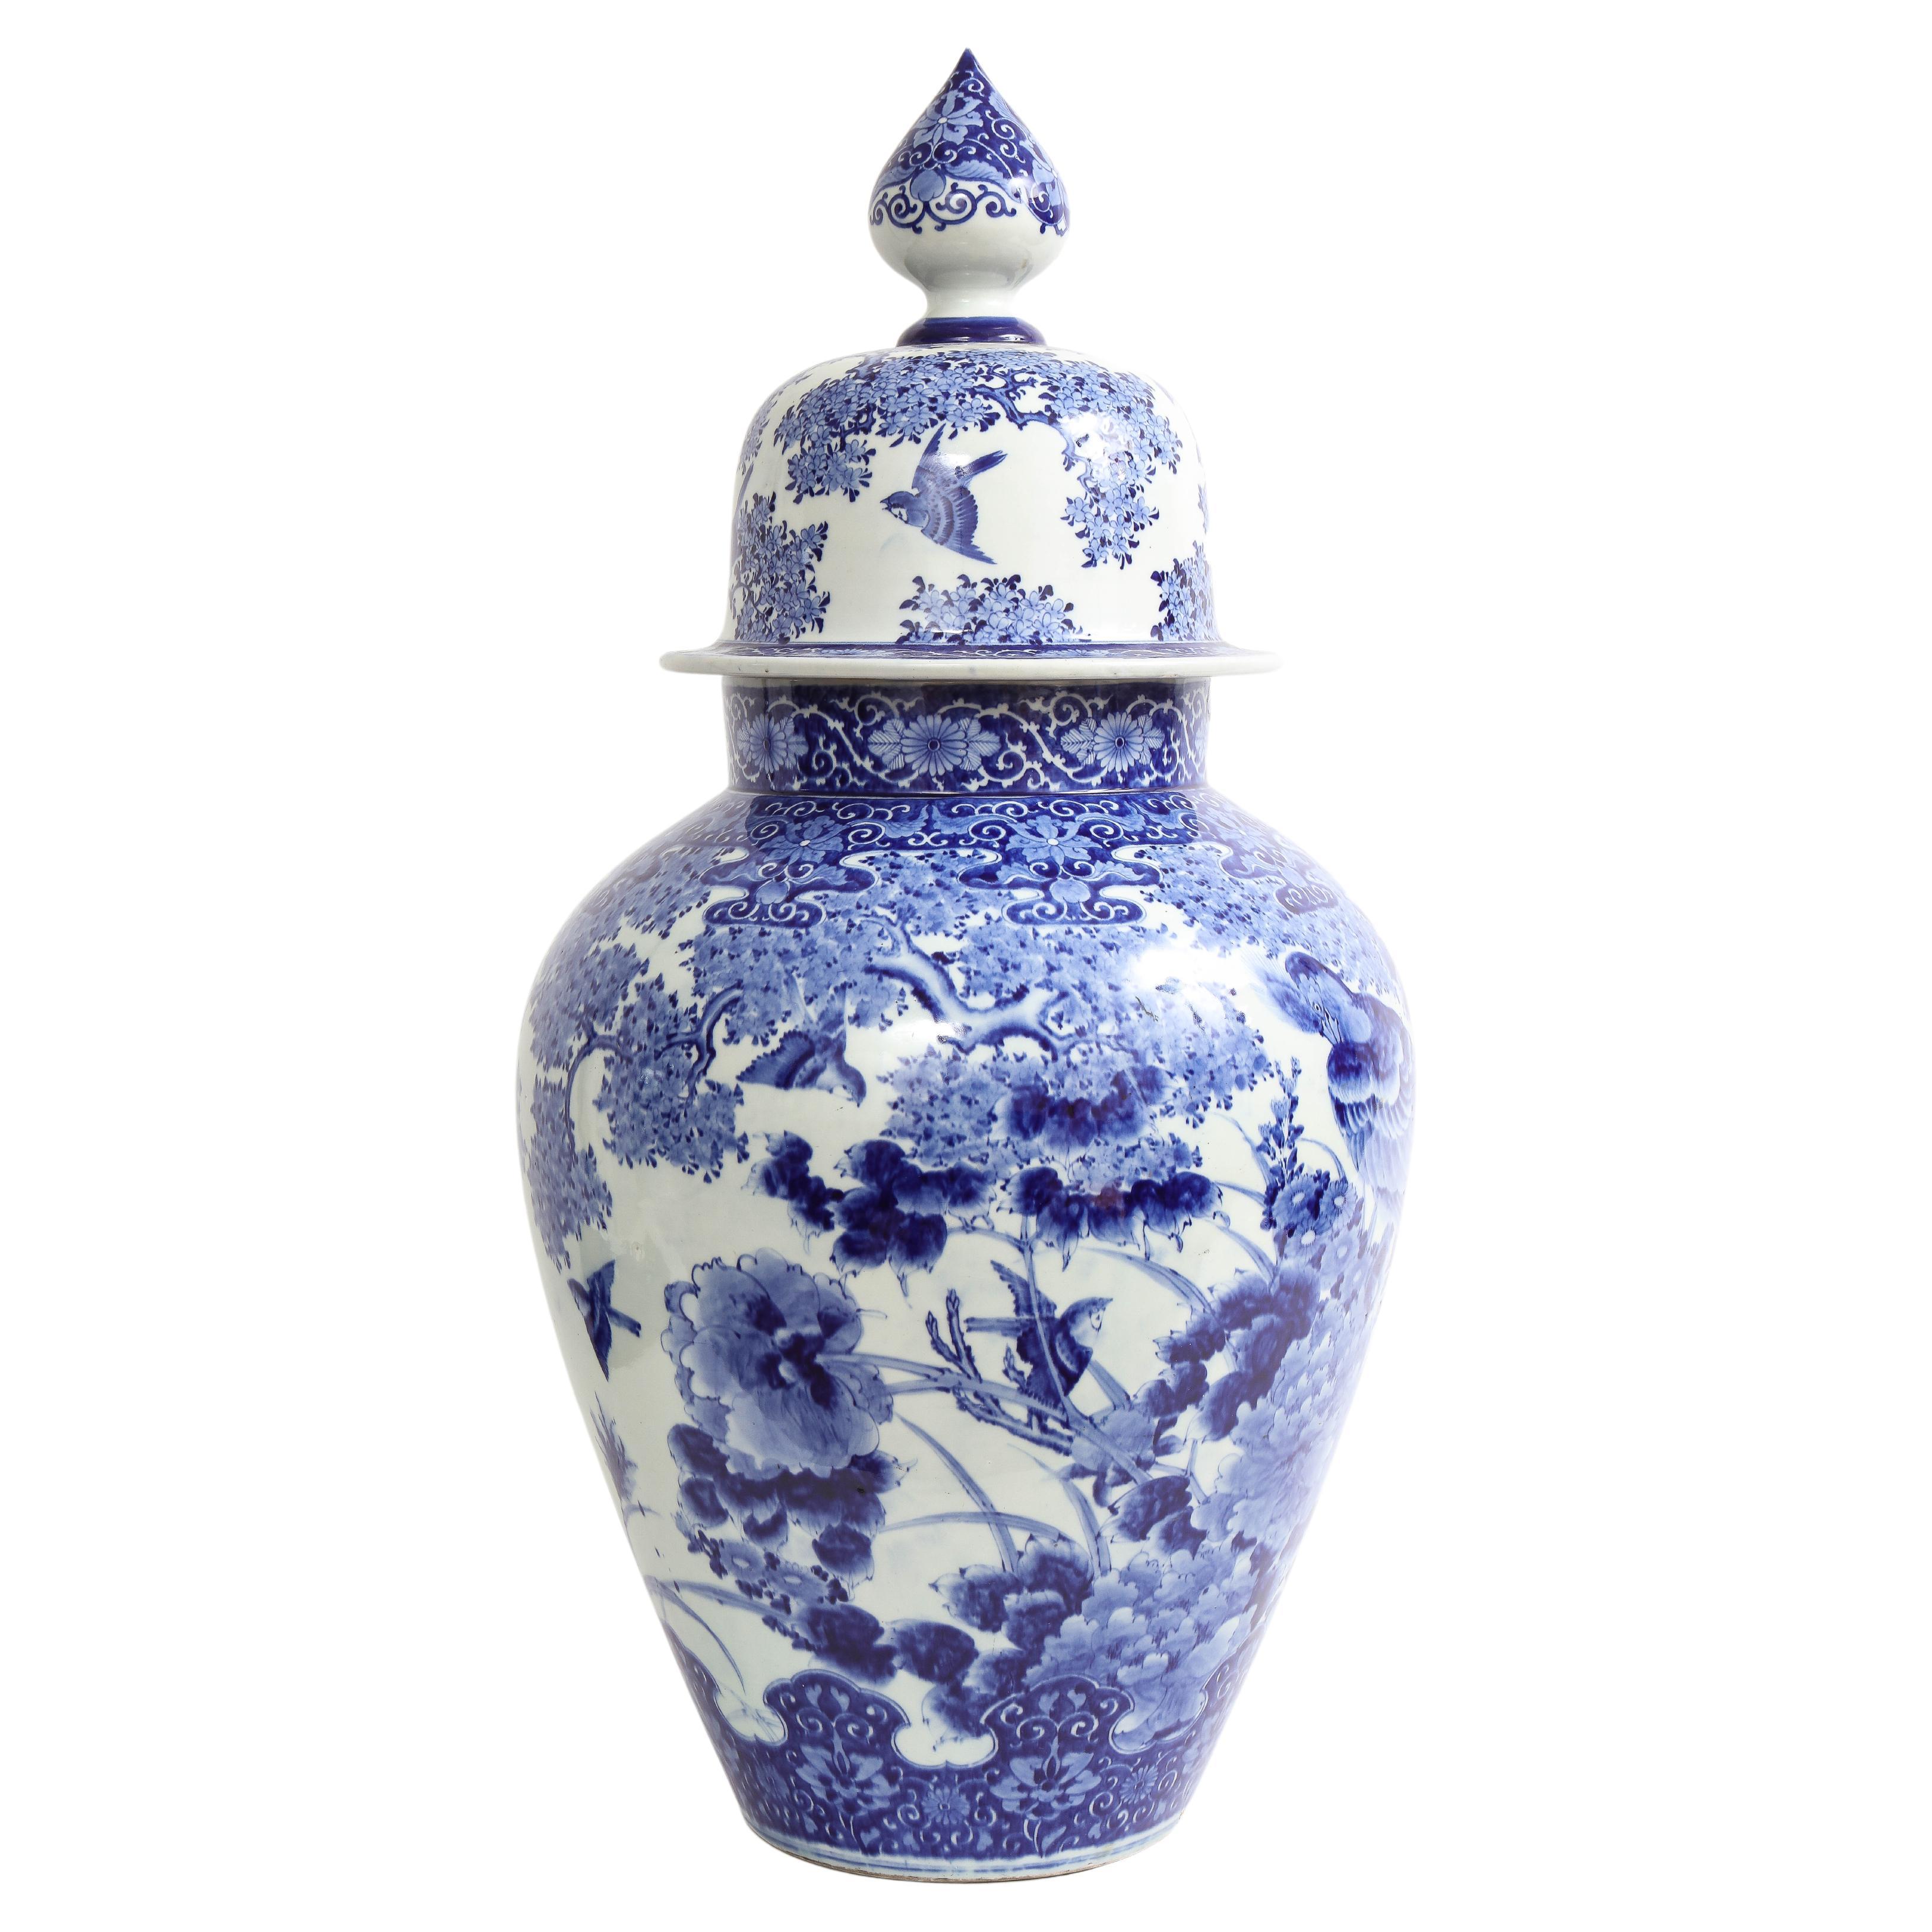 Groe japanische blau-weie Vase mit Fasanen- und Blumendekoration